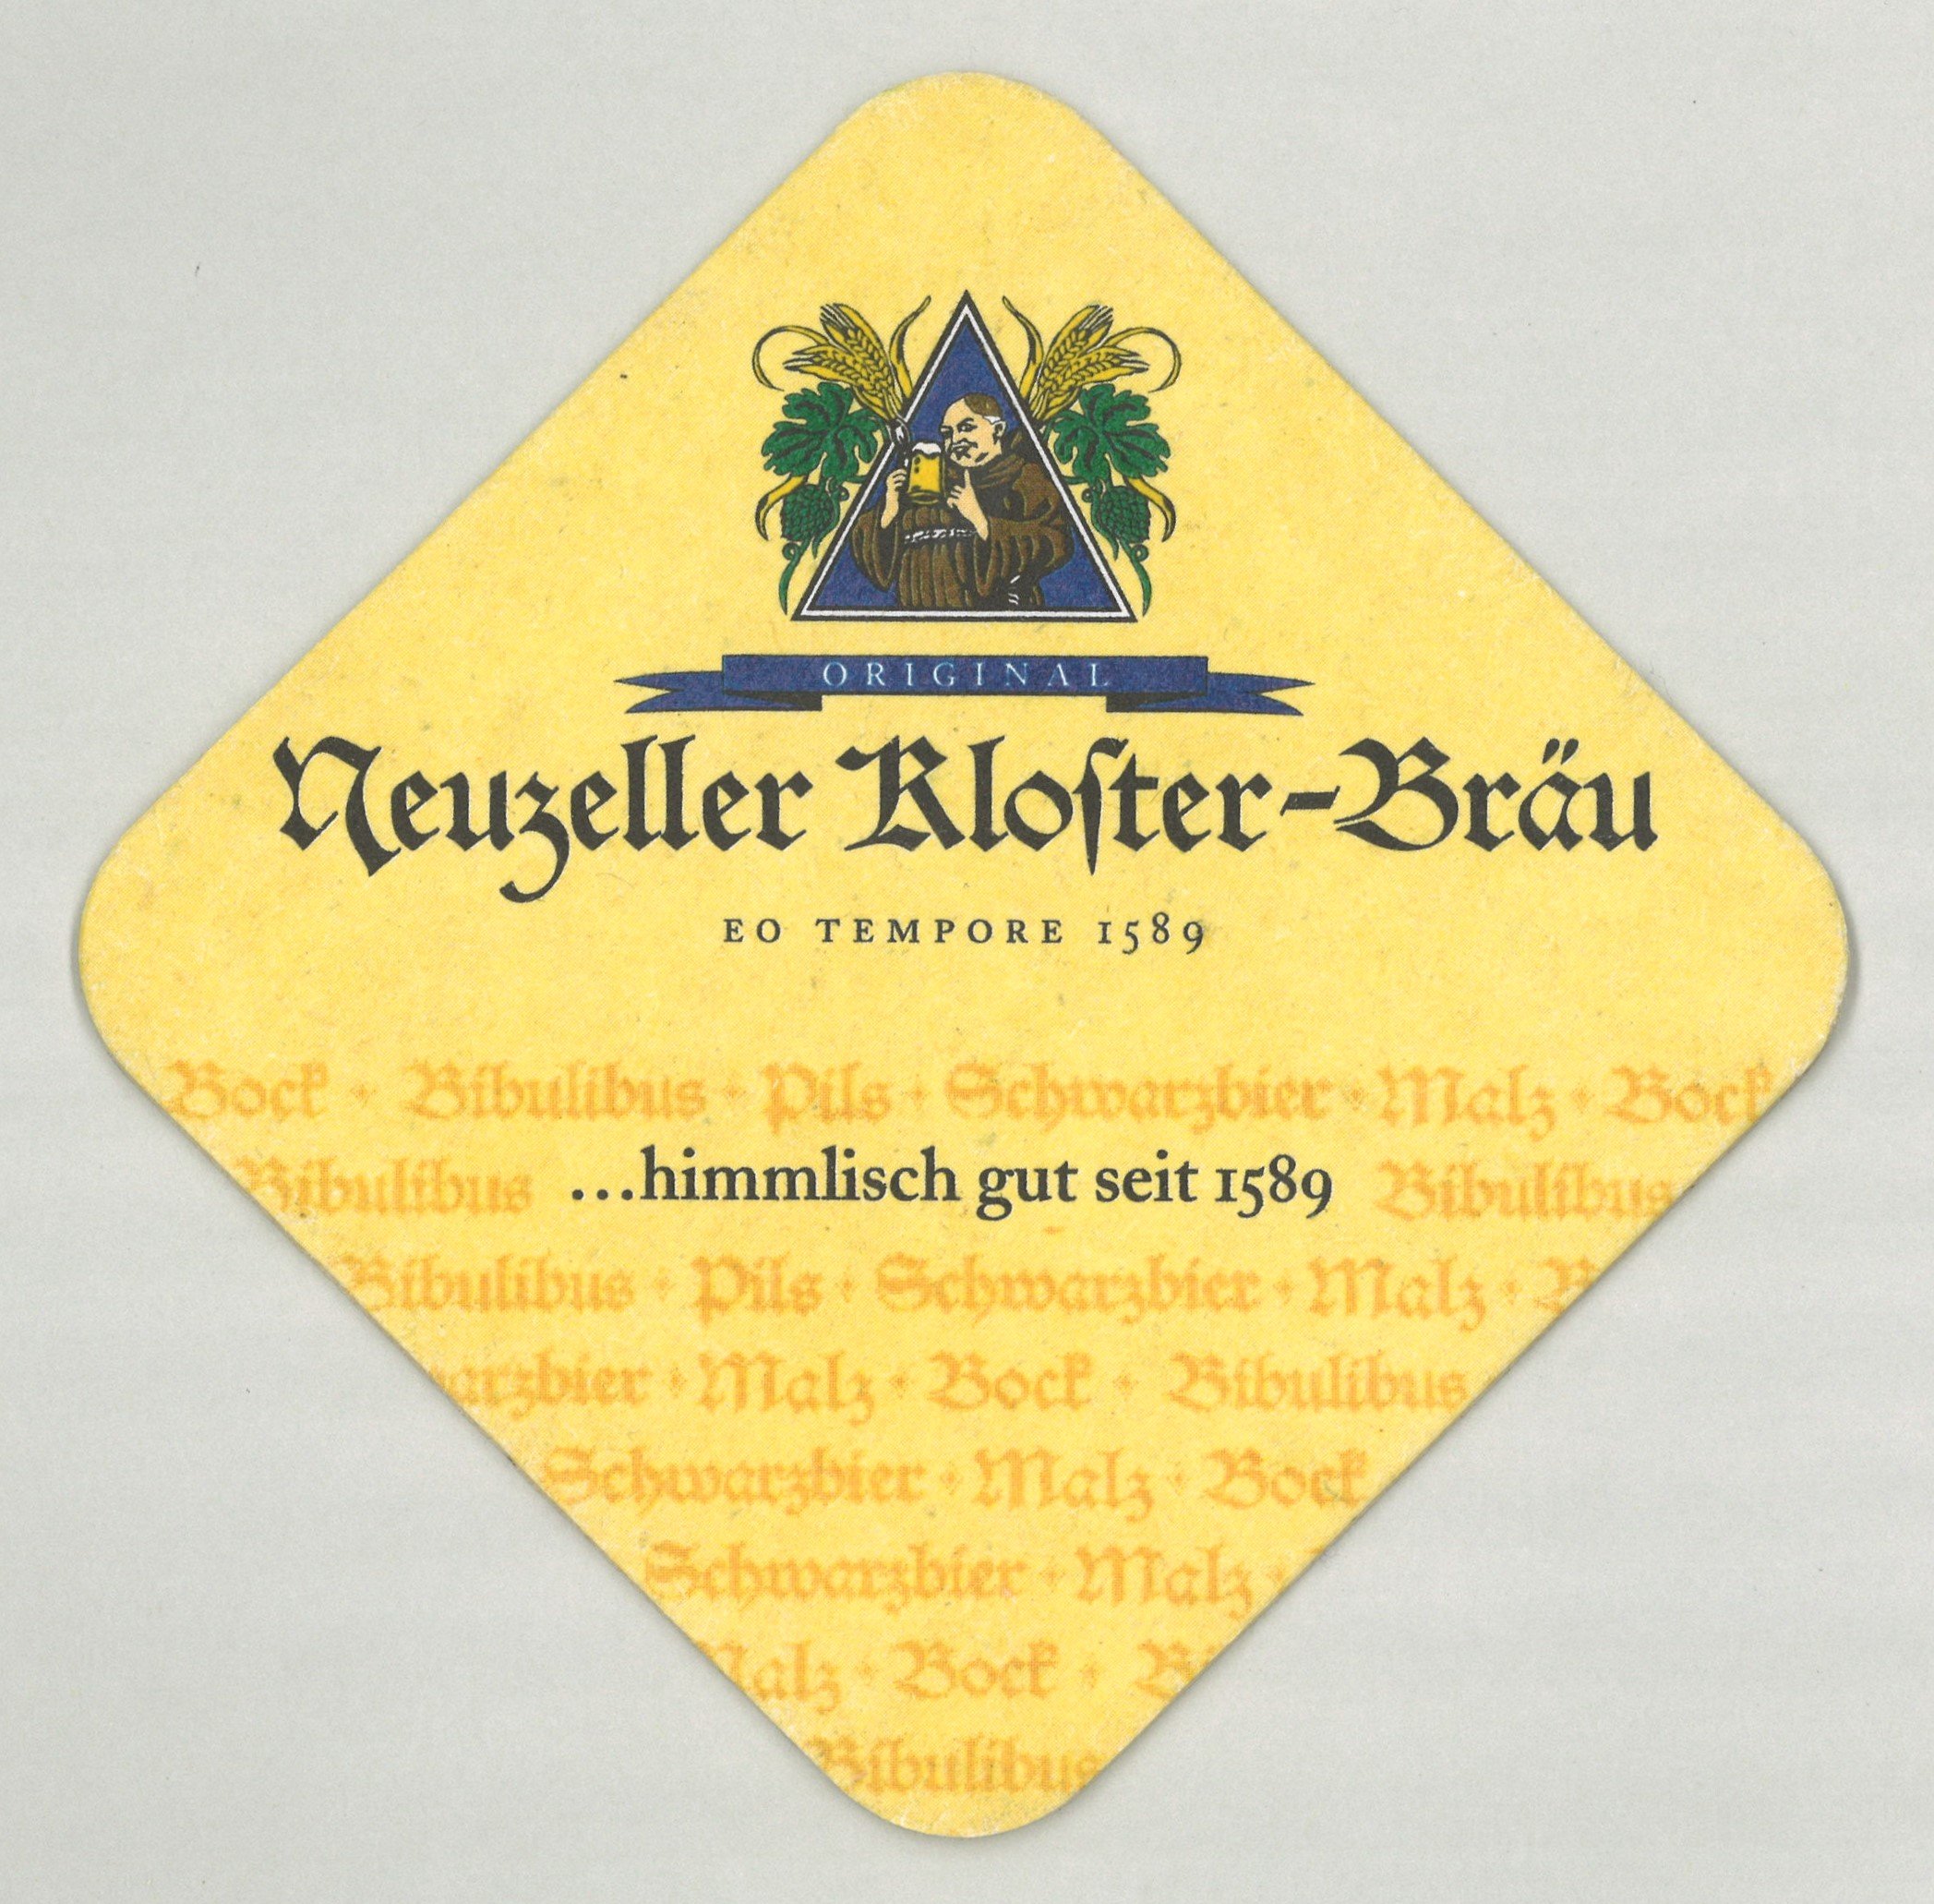 Neuzelle: Neuzeller Kloster-Bräu (Landesgeschichtliche Vereinigung für die Mark Brandenburg e.V., Archiv CC BY)